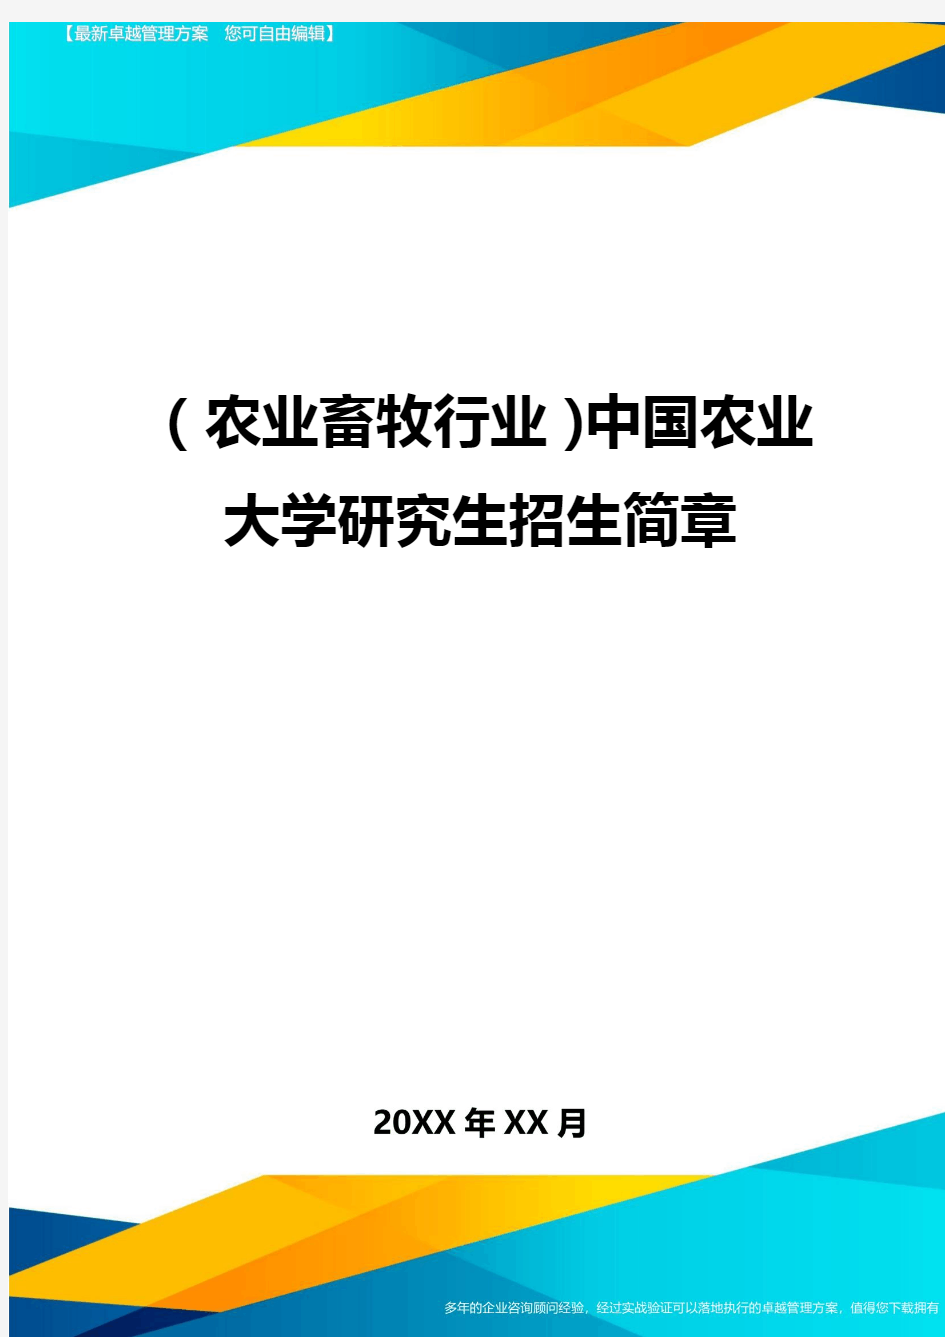 (2020年)(农业畜牧行业)中国农业大学研究生招生简章精编